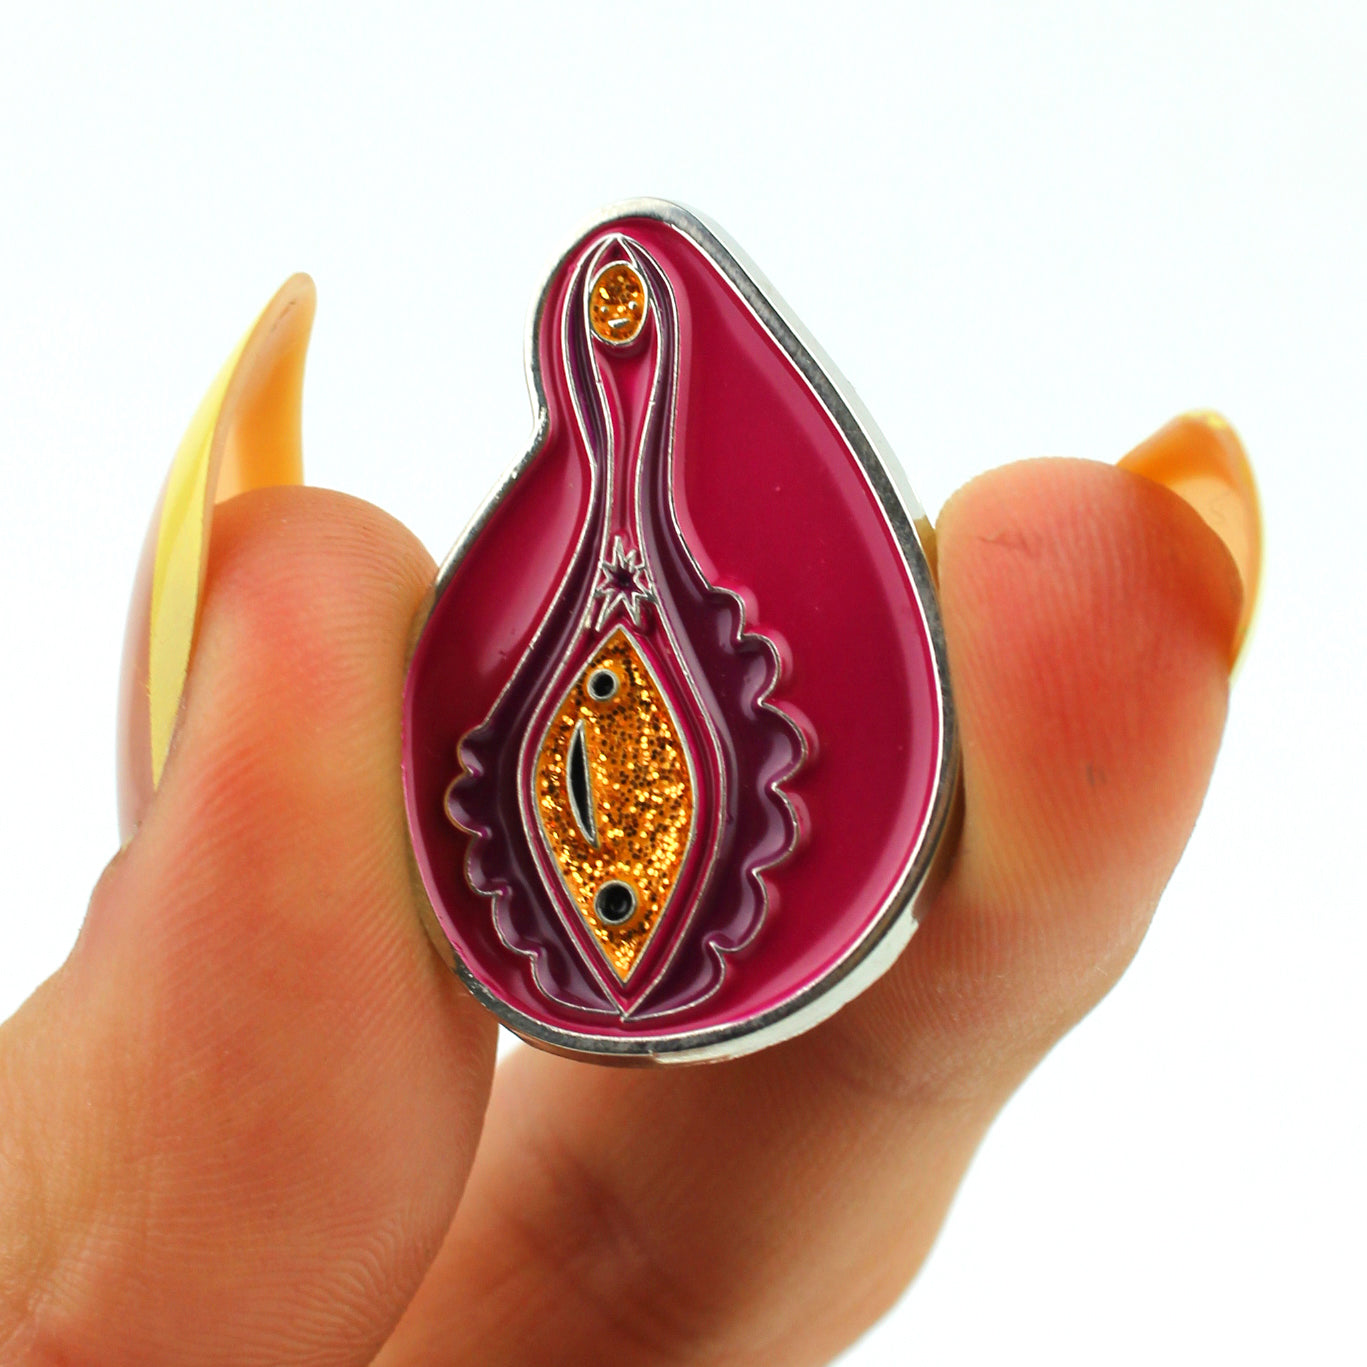 Sparkly Vagina + Vulva Enamel Pin | Glitter Anatomical Vulva Pin - Vagina Pin Badge Reel Lanyard - OBGYN pins and gifts